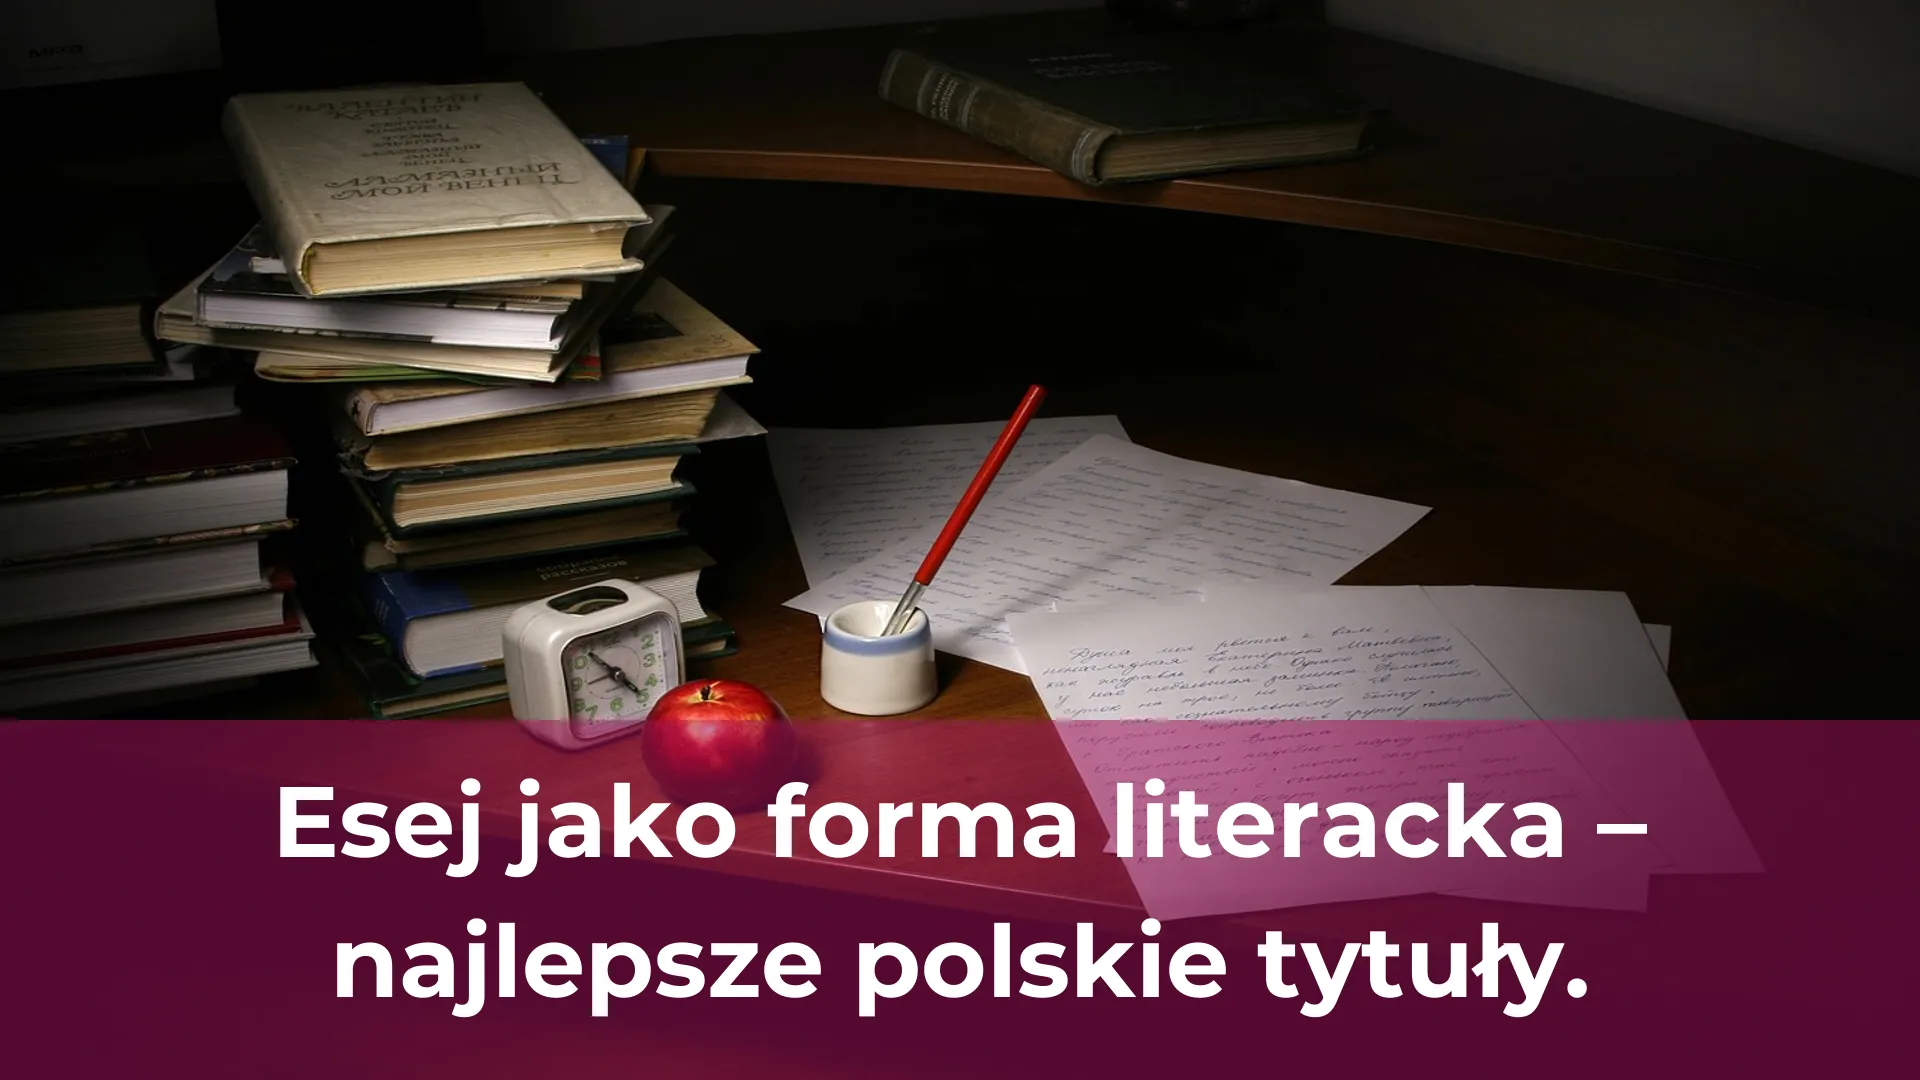 Esej jako forma literacka najlepsze polskie tytuły